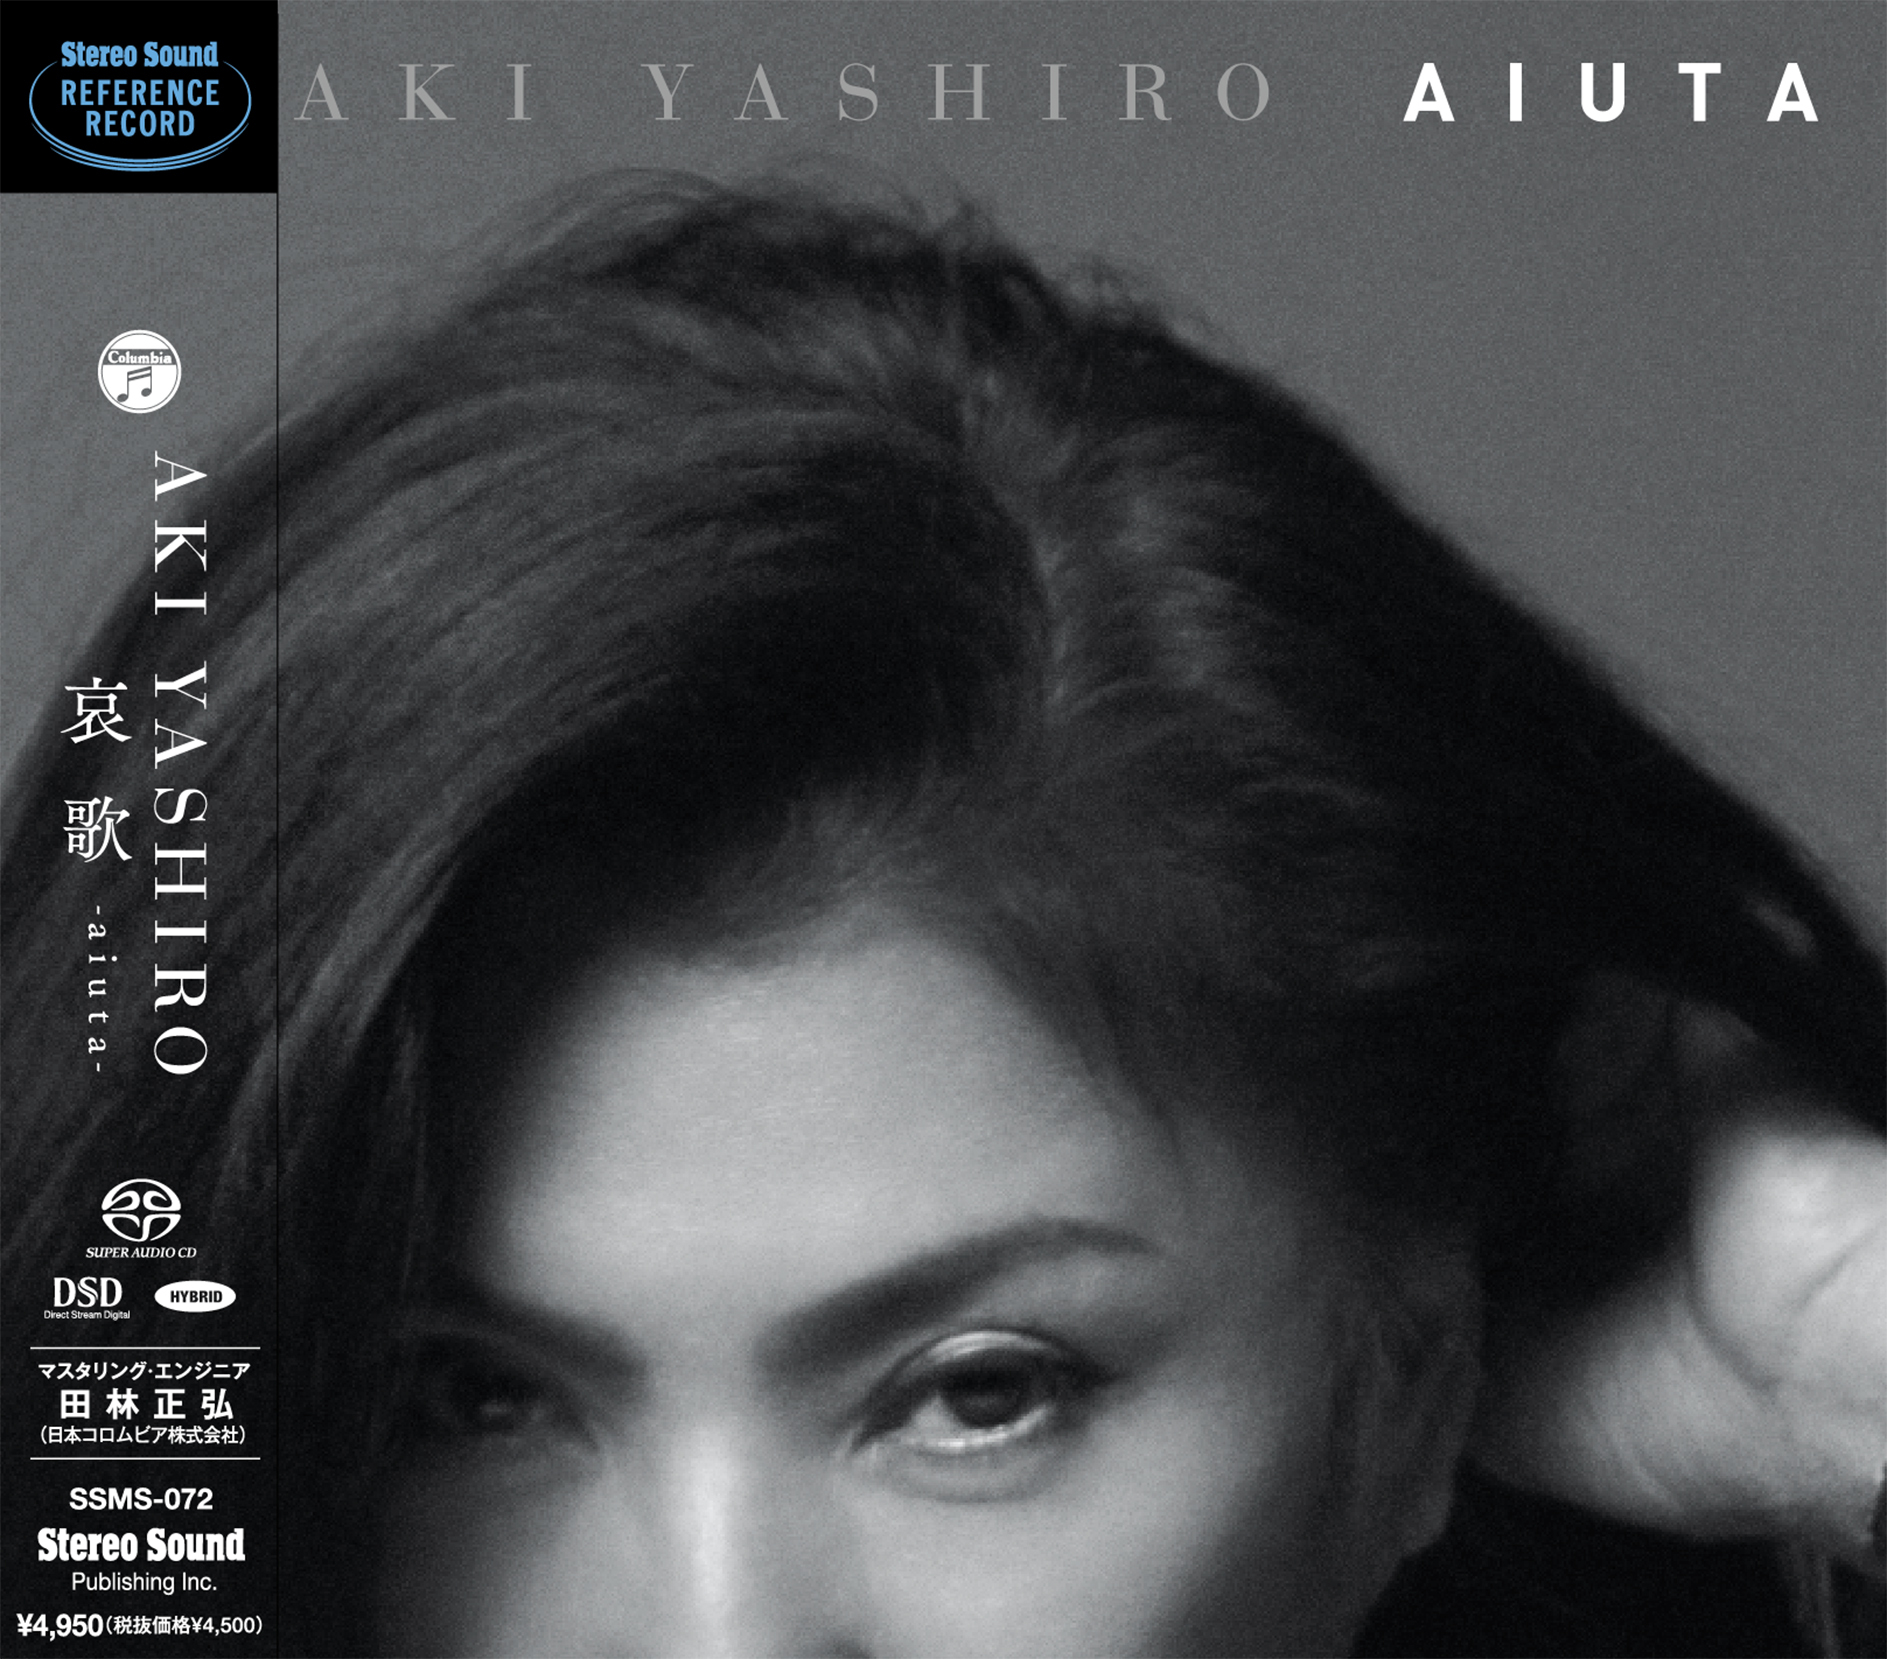 八代亜紀が2015年に発表した入魂のブルース・アルバム
「哀歌-aiuta-」本邦初のCD/SACDハイブリッドでリリース